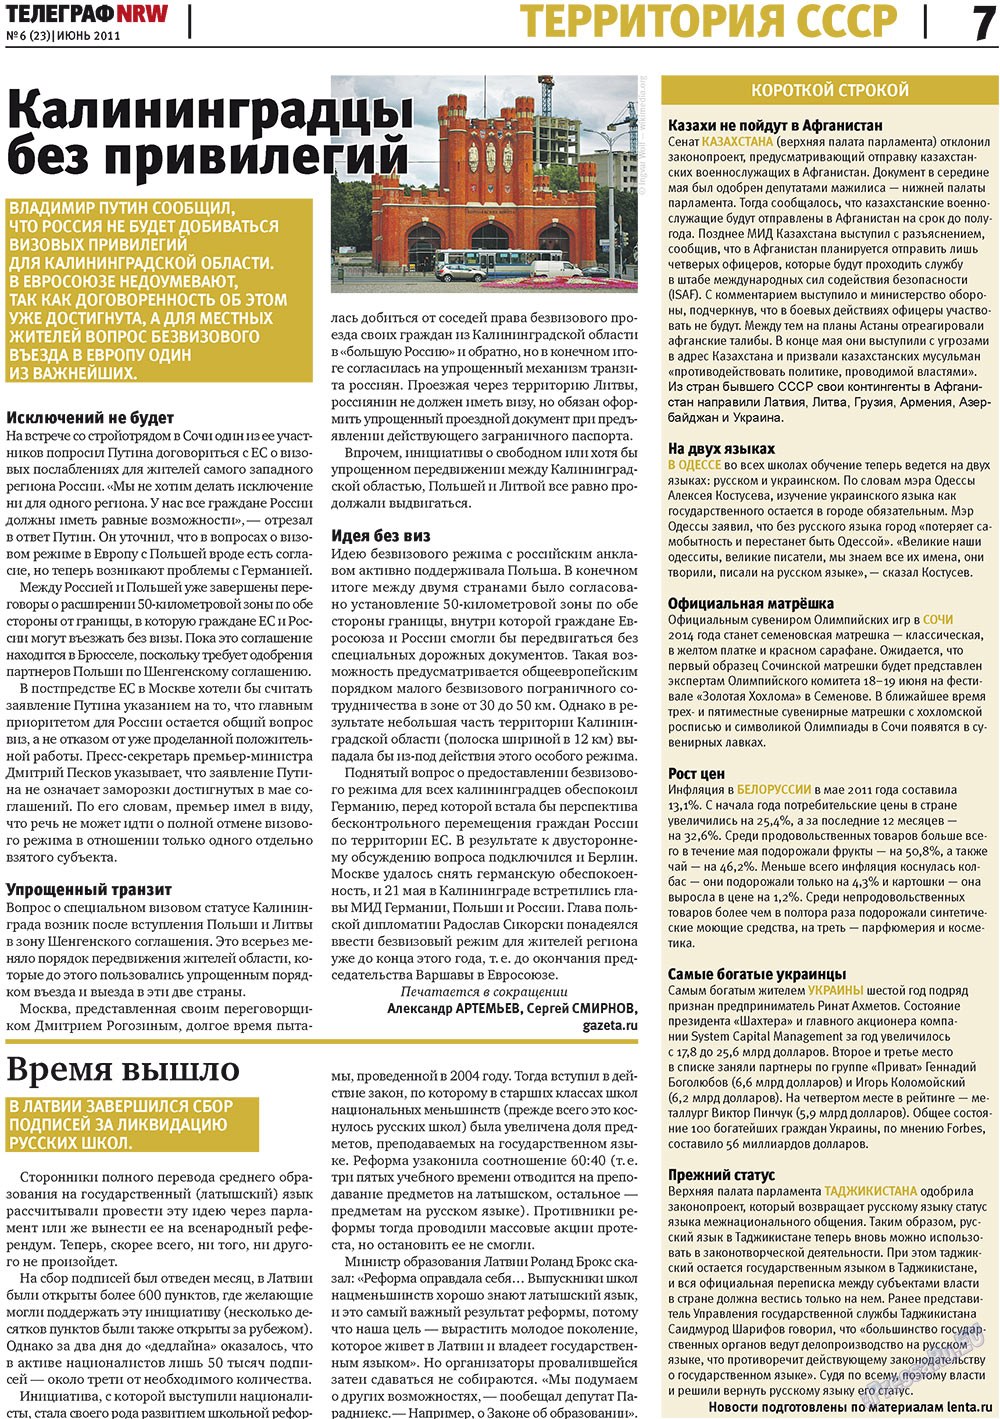 Телеграф NRW (газета). 2011 год, номер 6, стр. 7